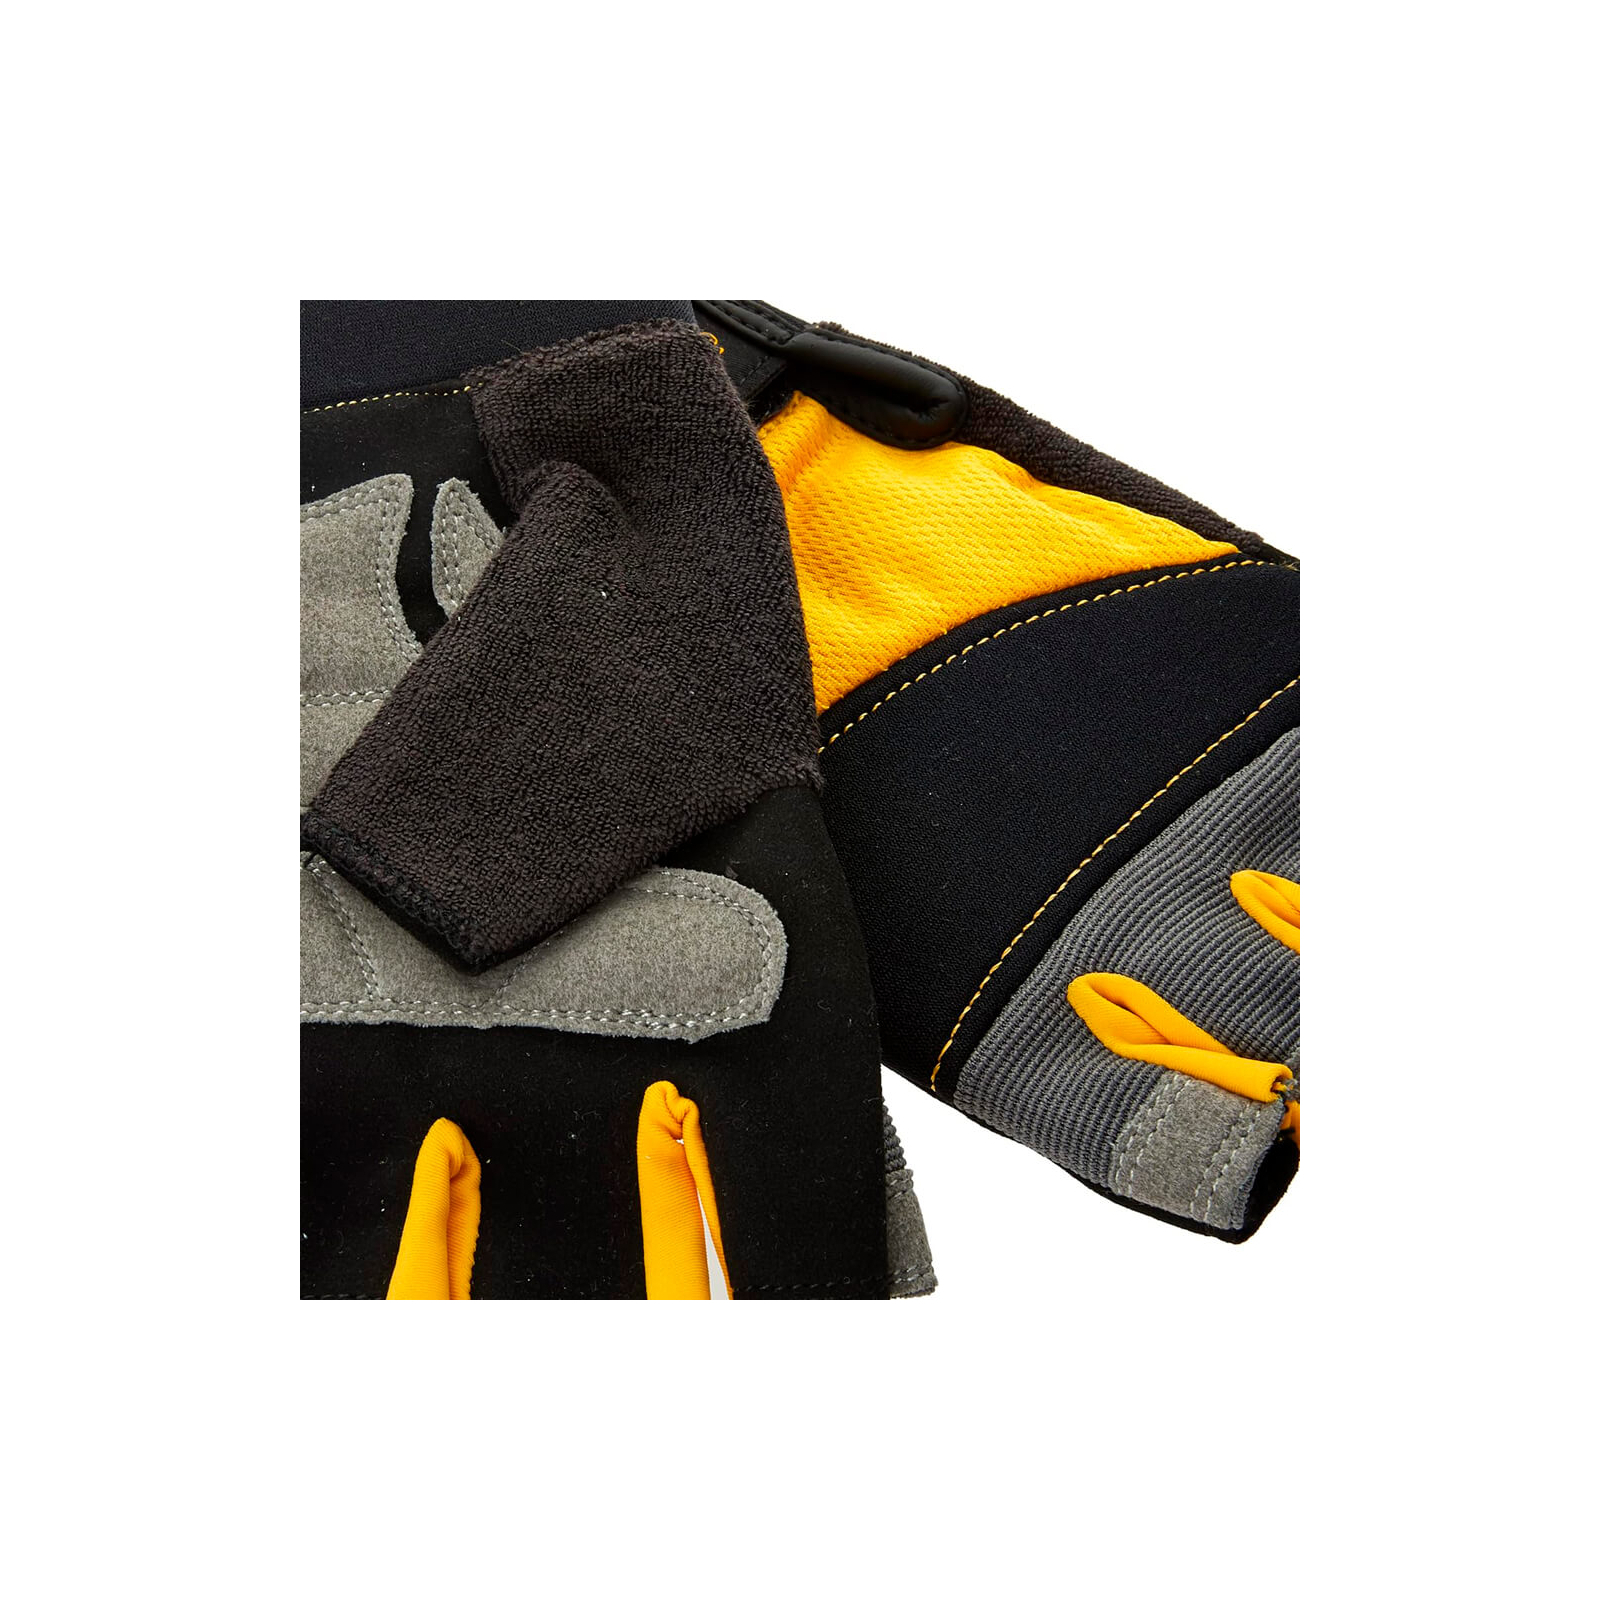 Защитные перчатки DeWALT открытые, разм. L/9, с накладками на ладони (DPG213L) изображение 3